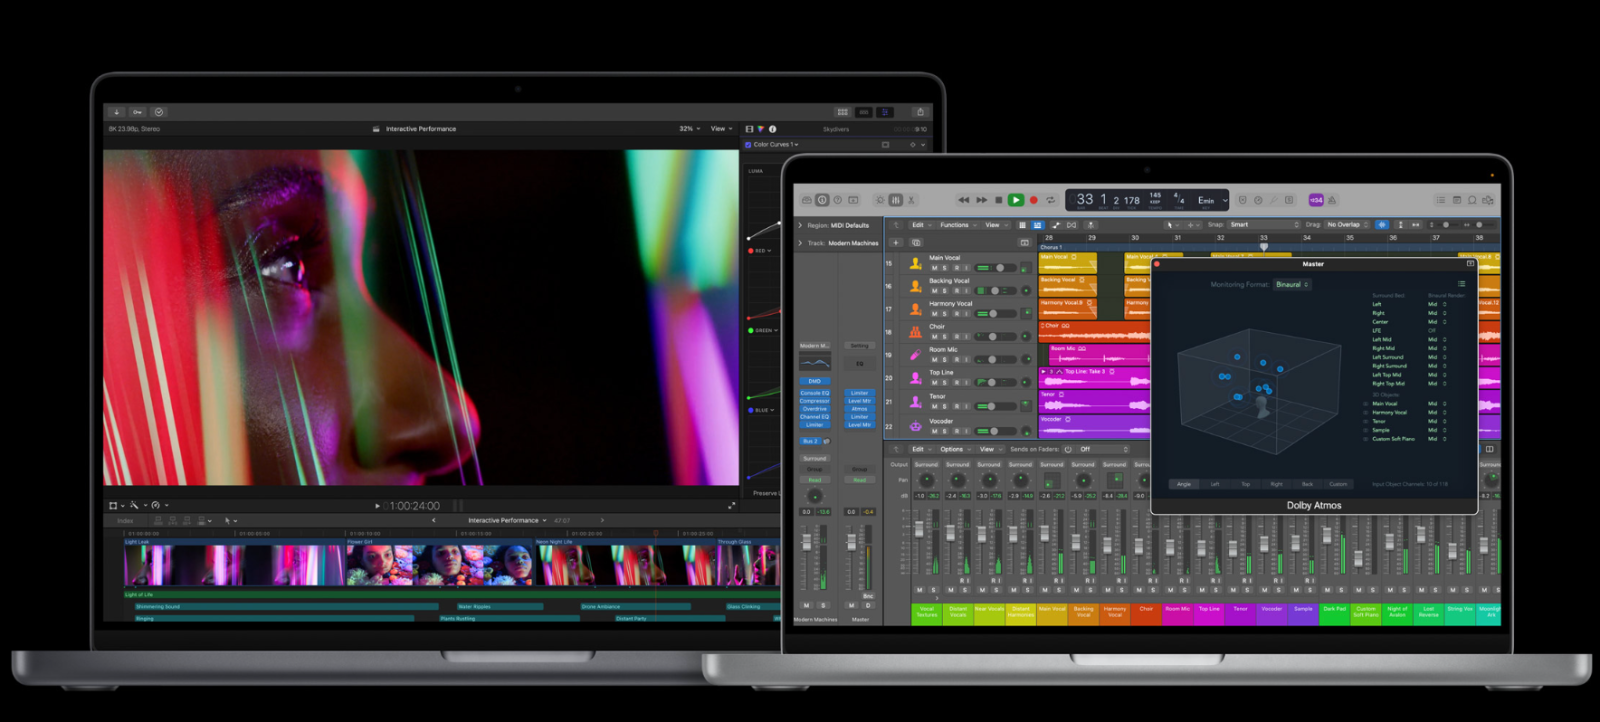 MacBook Pro M1 có màn hình Liquid Retina XDR hiển thị hình ảnh sống động, chân thực